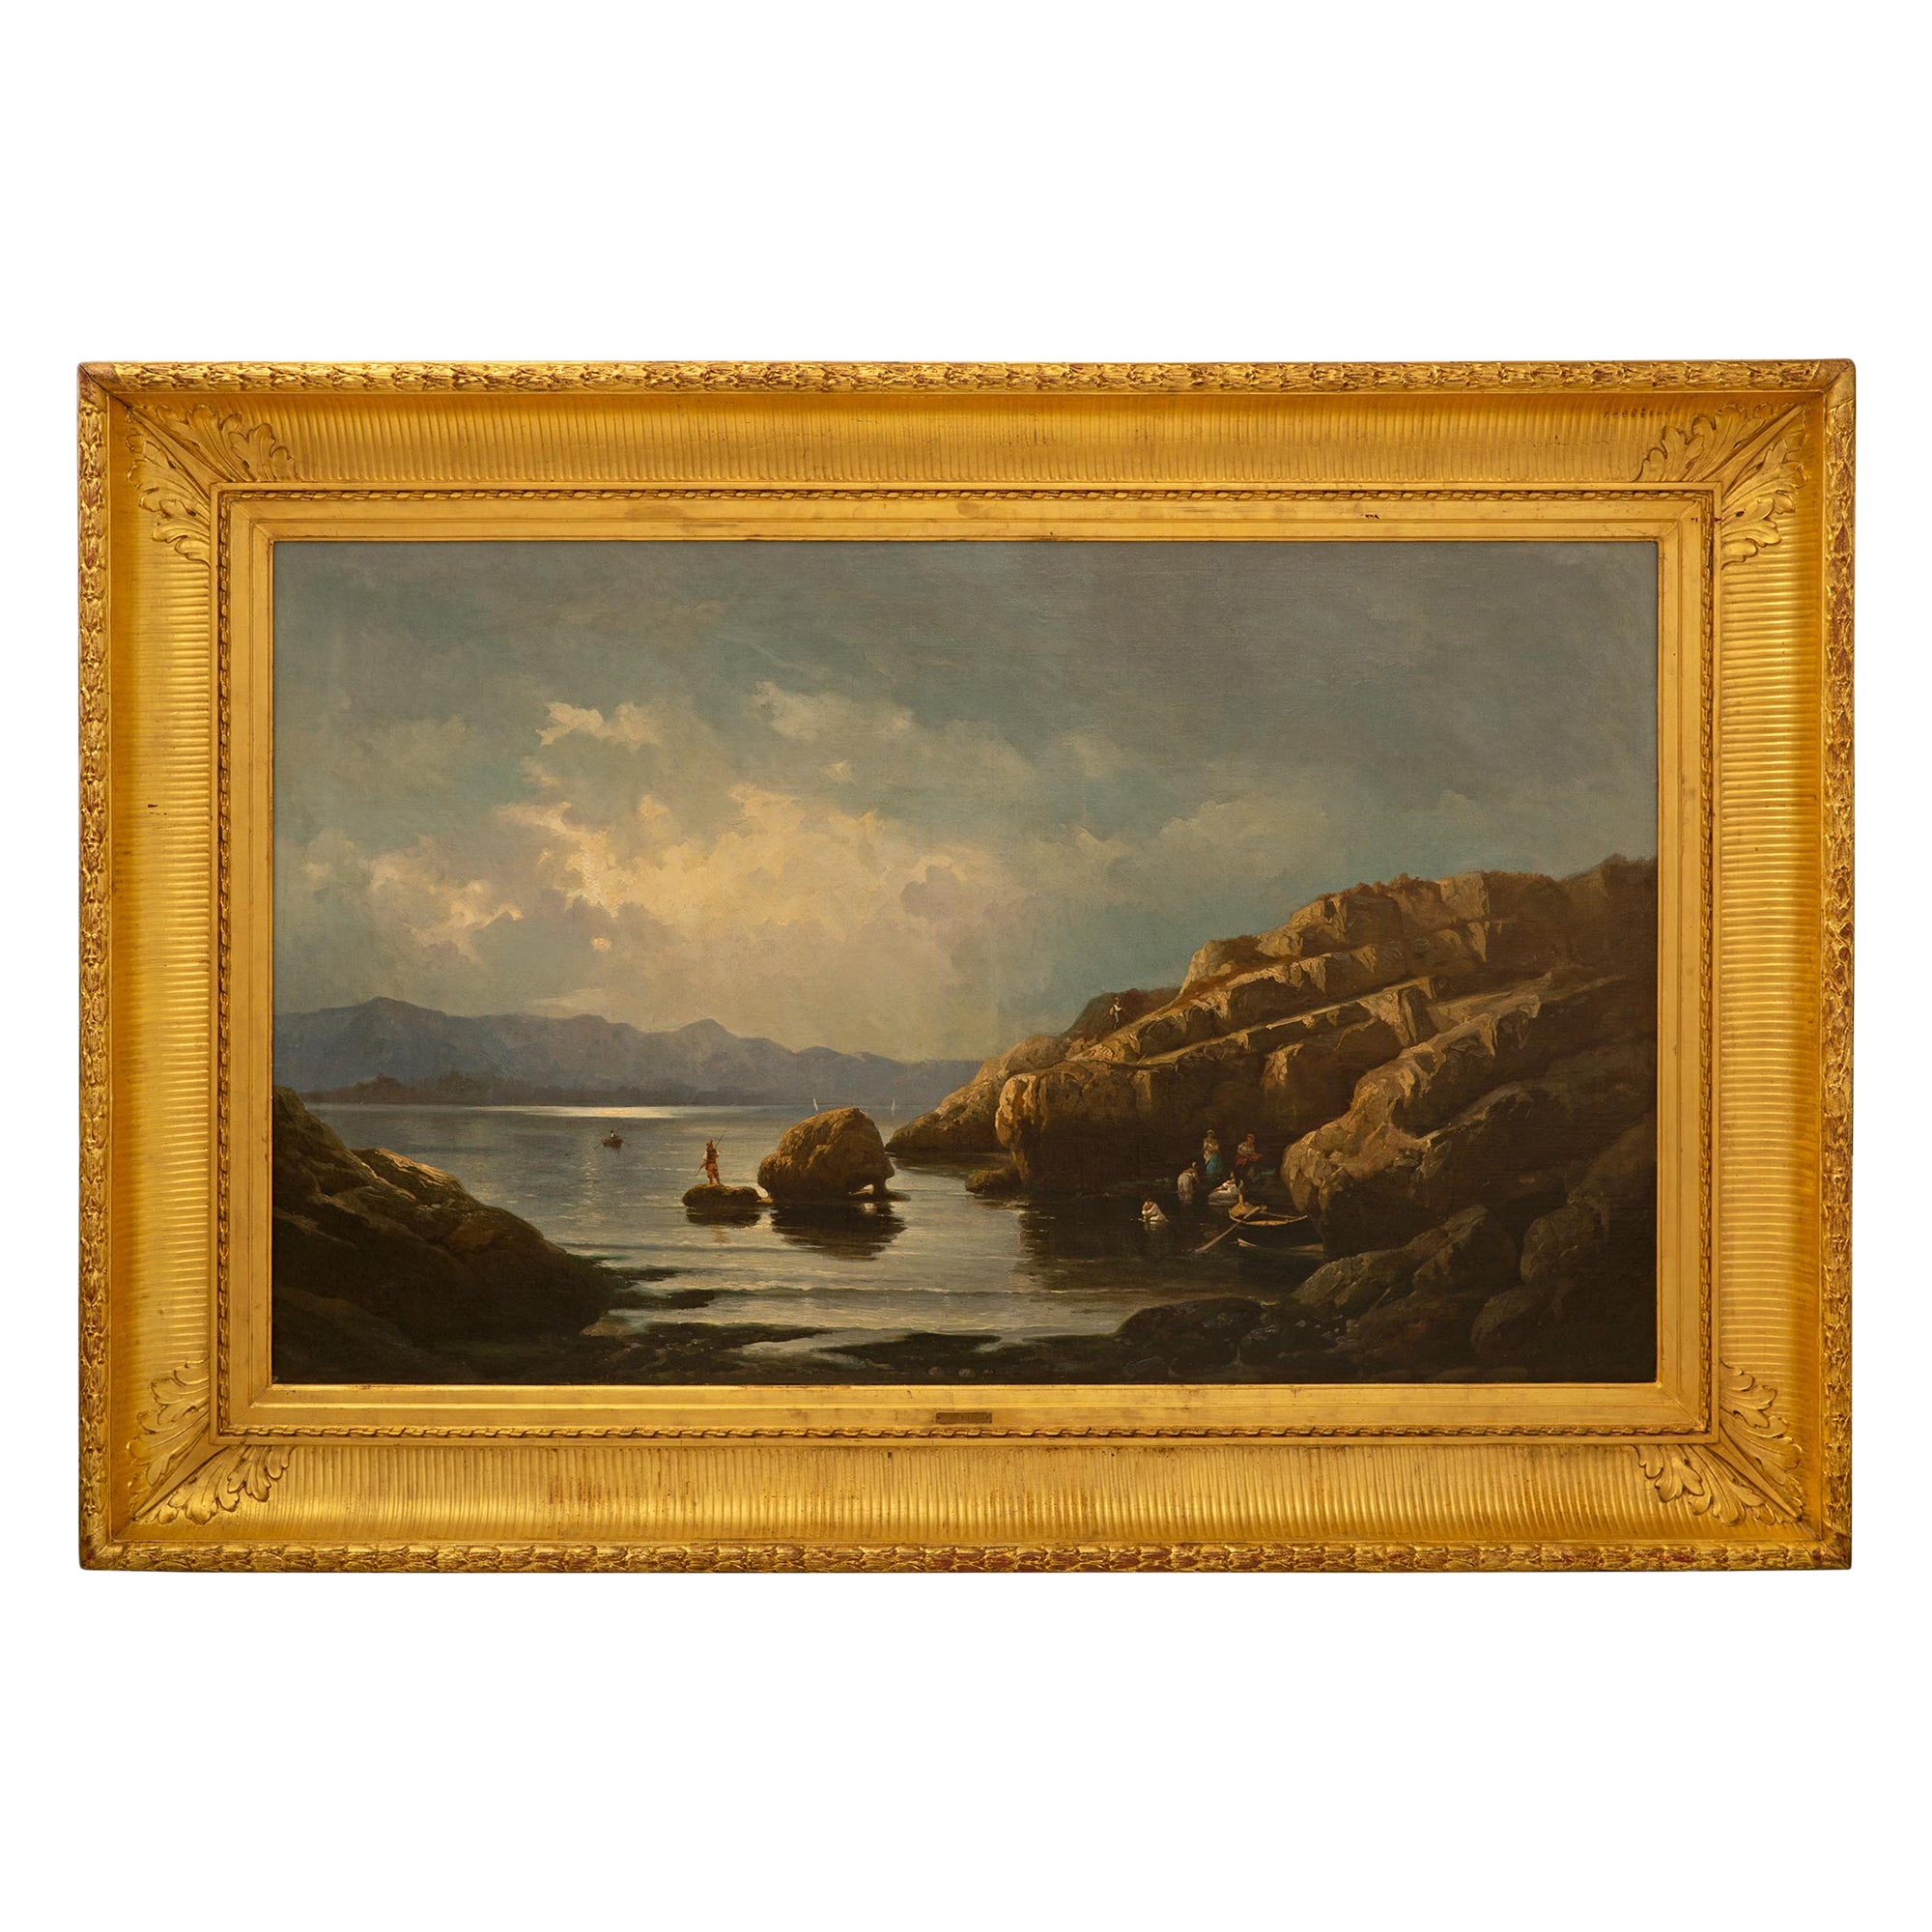 Peinture à l'huile sur toile française du XIXe siècle de Marie-Auguste Martin, vers 1860